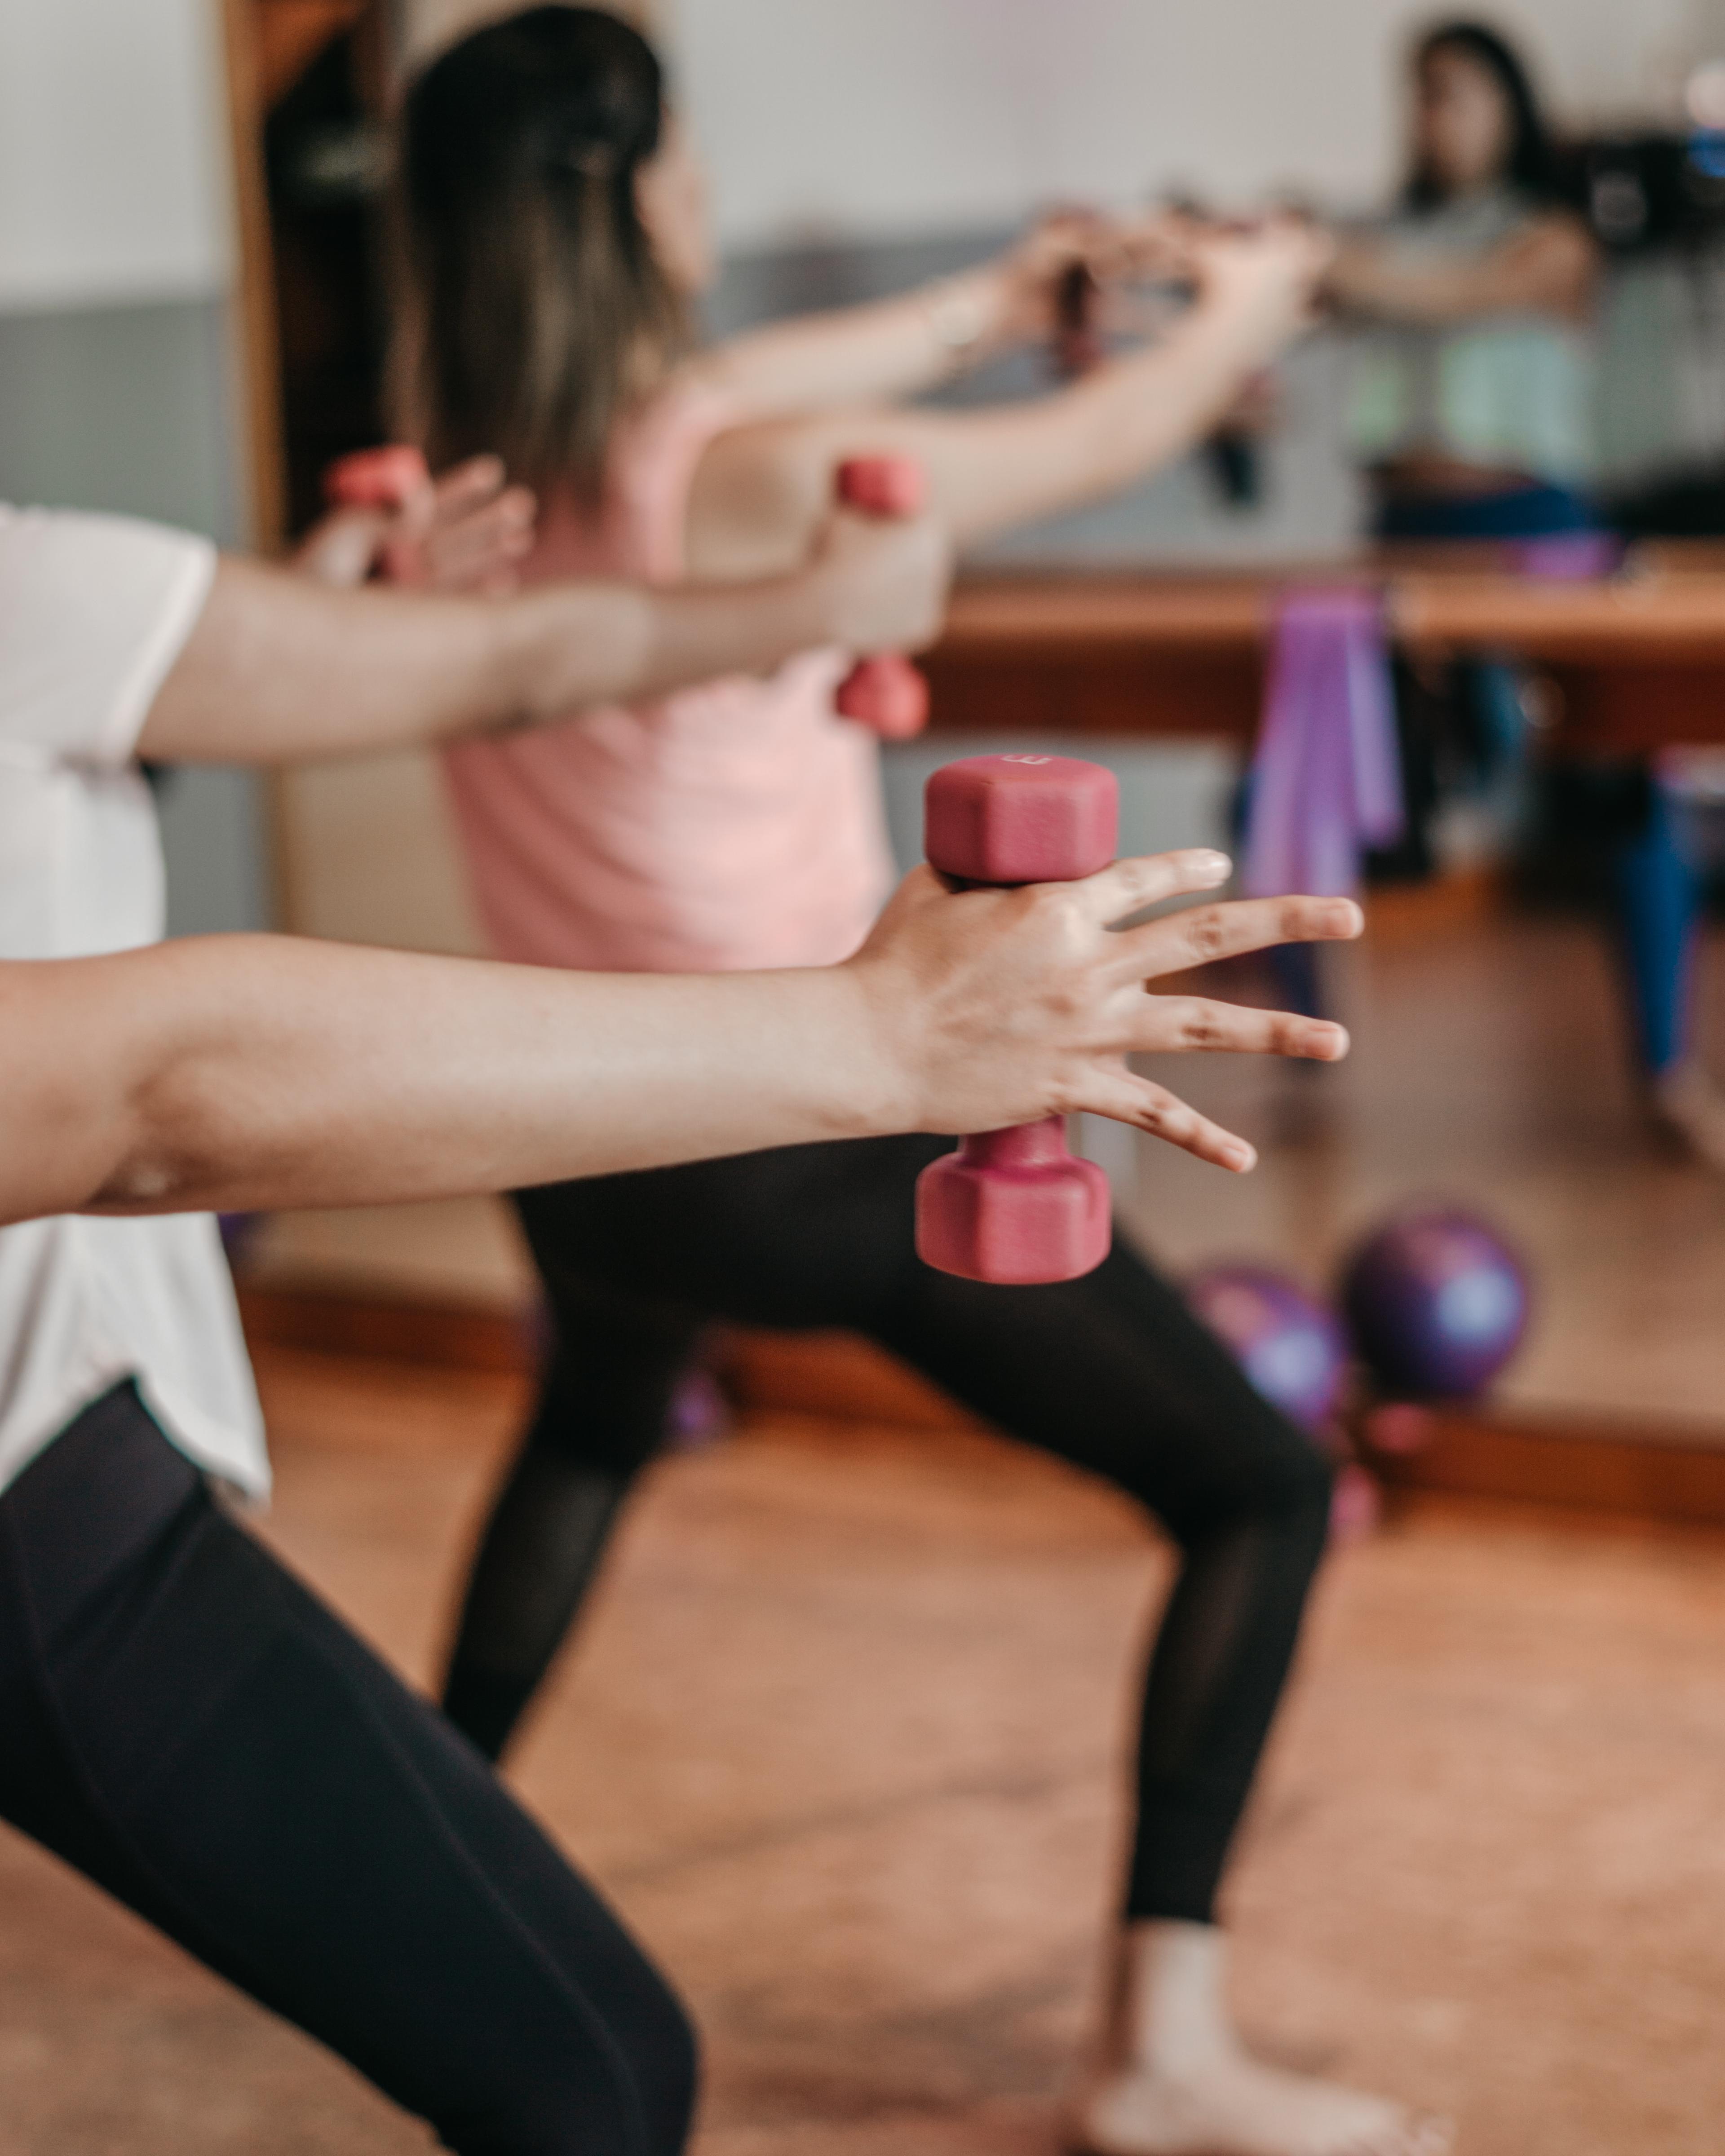 Ćwiczenia na mięśnie dna miednicy - jak je wykonywać i przykłady konkretnych ćwiczeń. Kto powinien wykonywać ćwiczenia Kegla? Jak wzmocnić mięśnie dna miednicy? Ćwiczenia i profilaktyka!